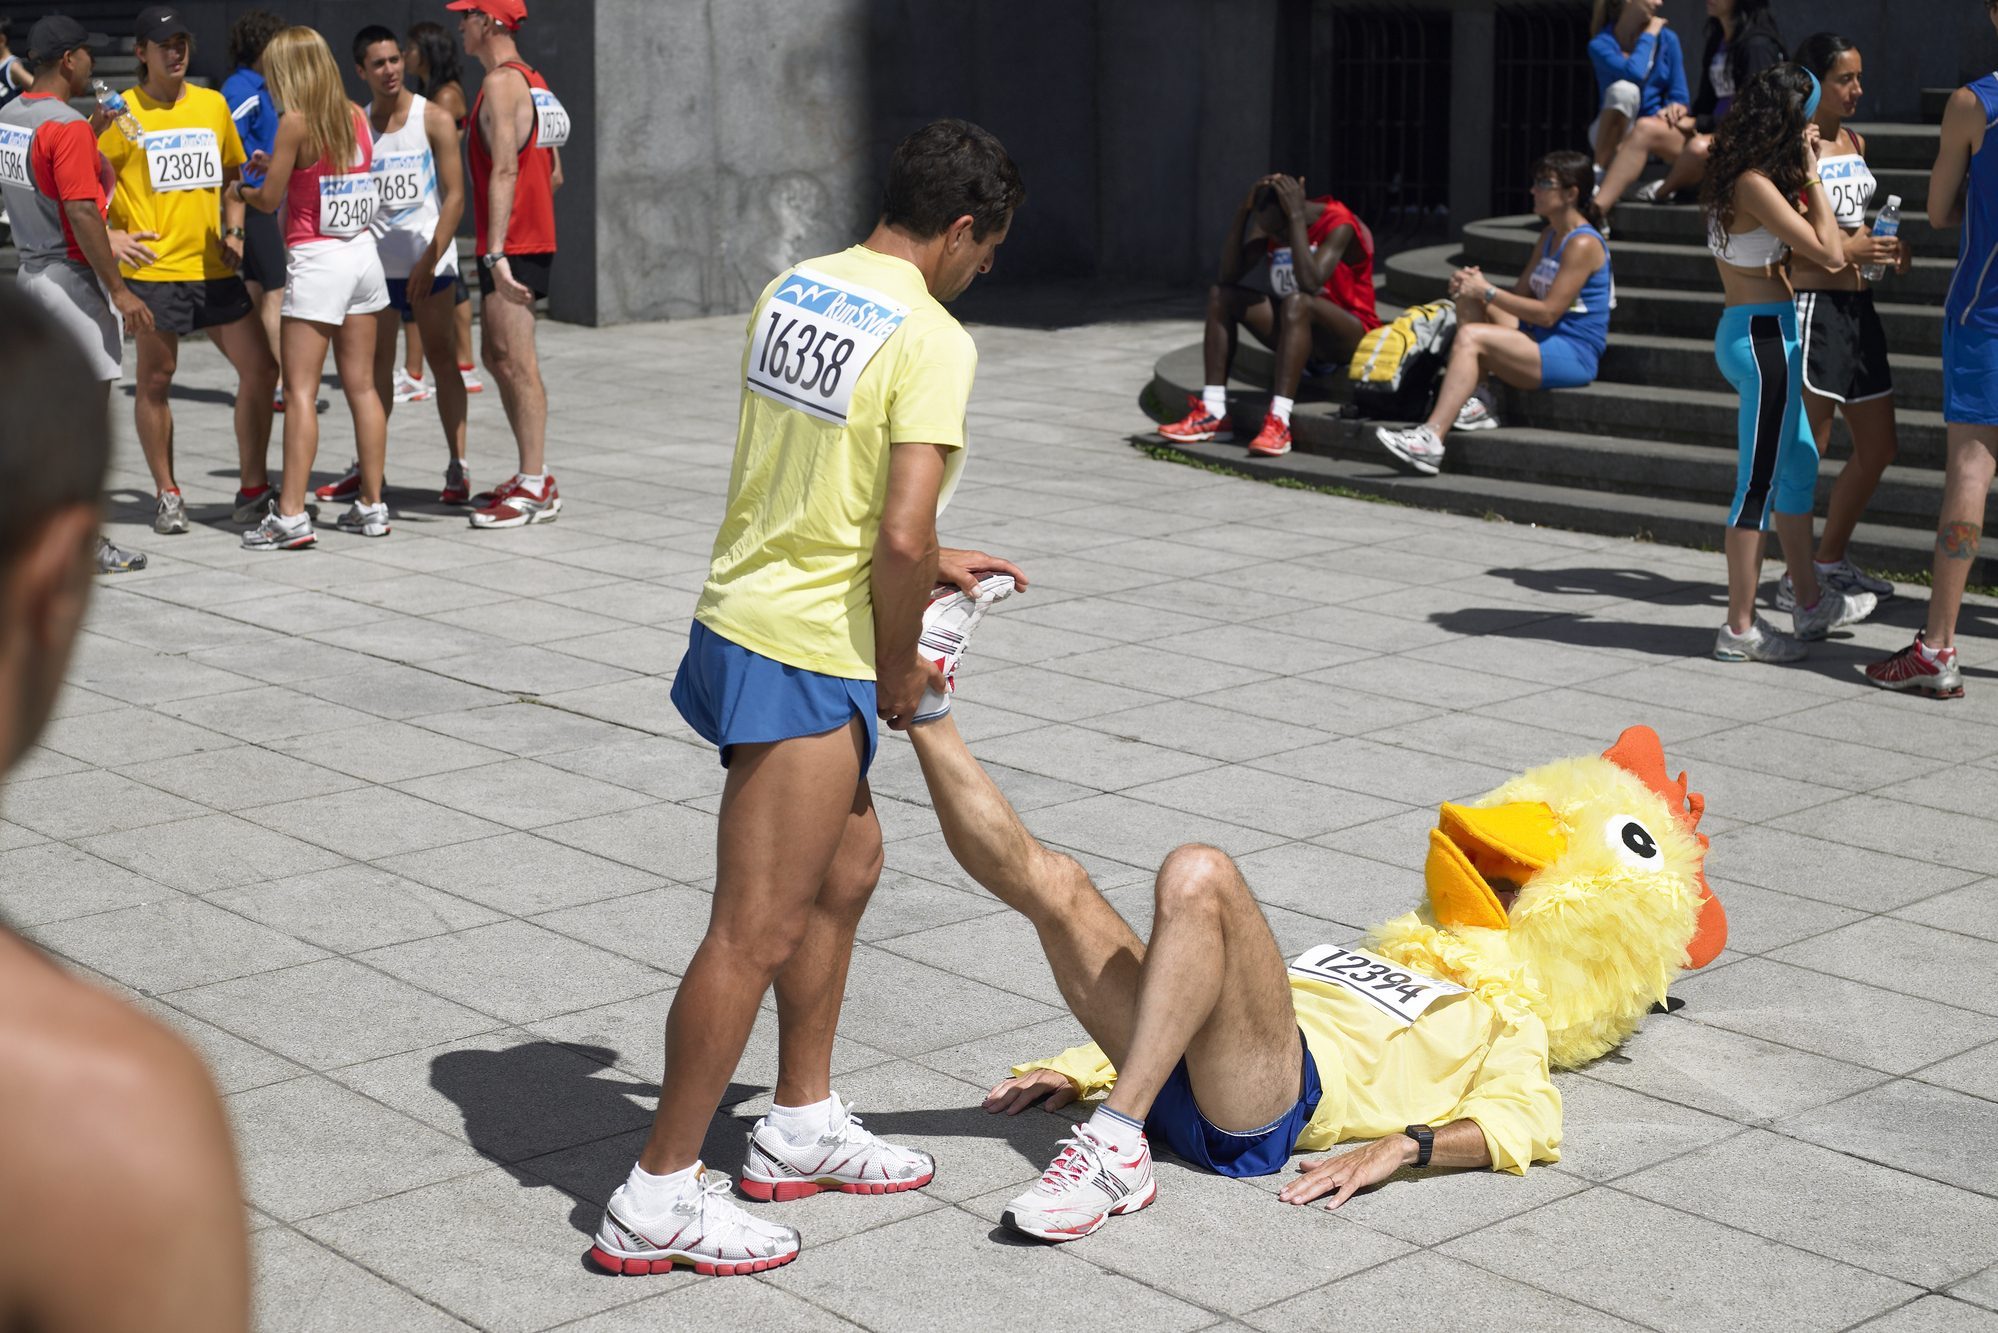 Group of marathon runners stretching on sidewalk, one wearing chicken head